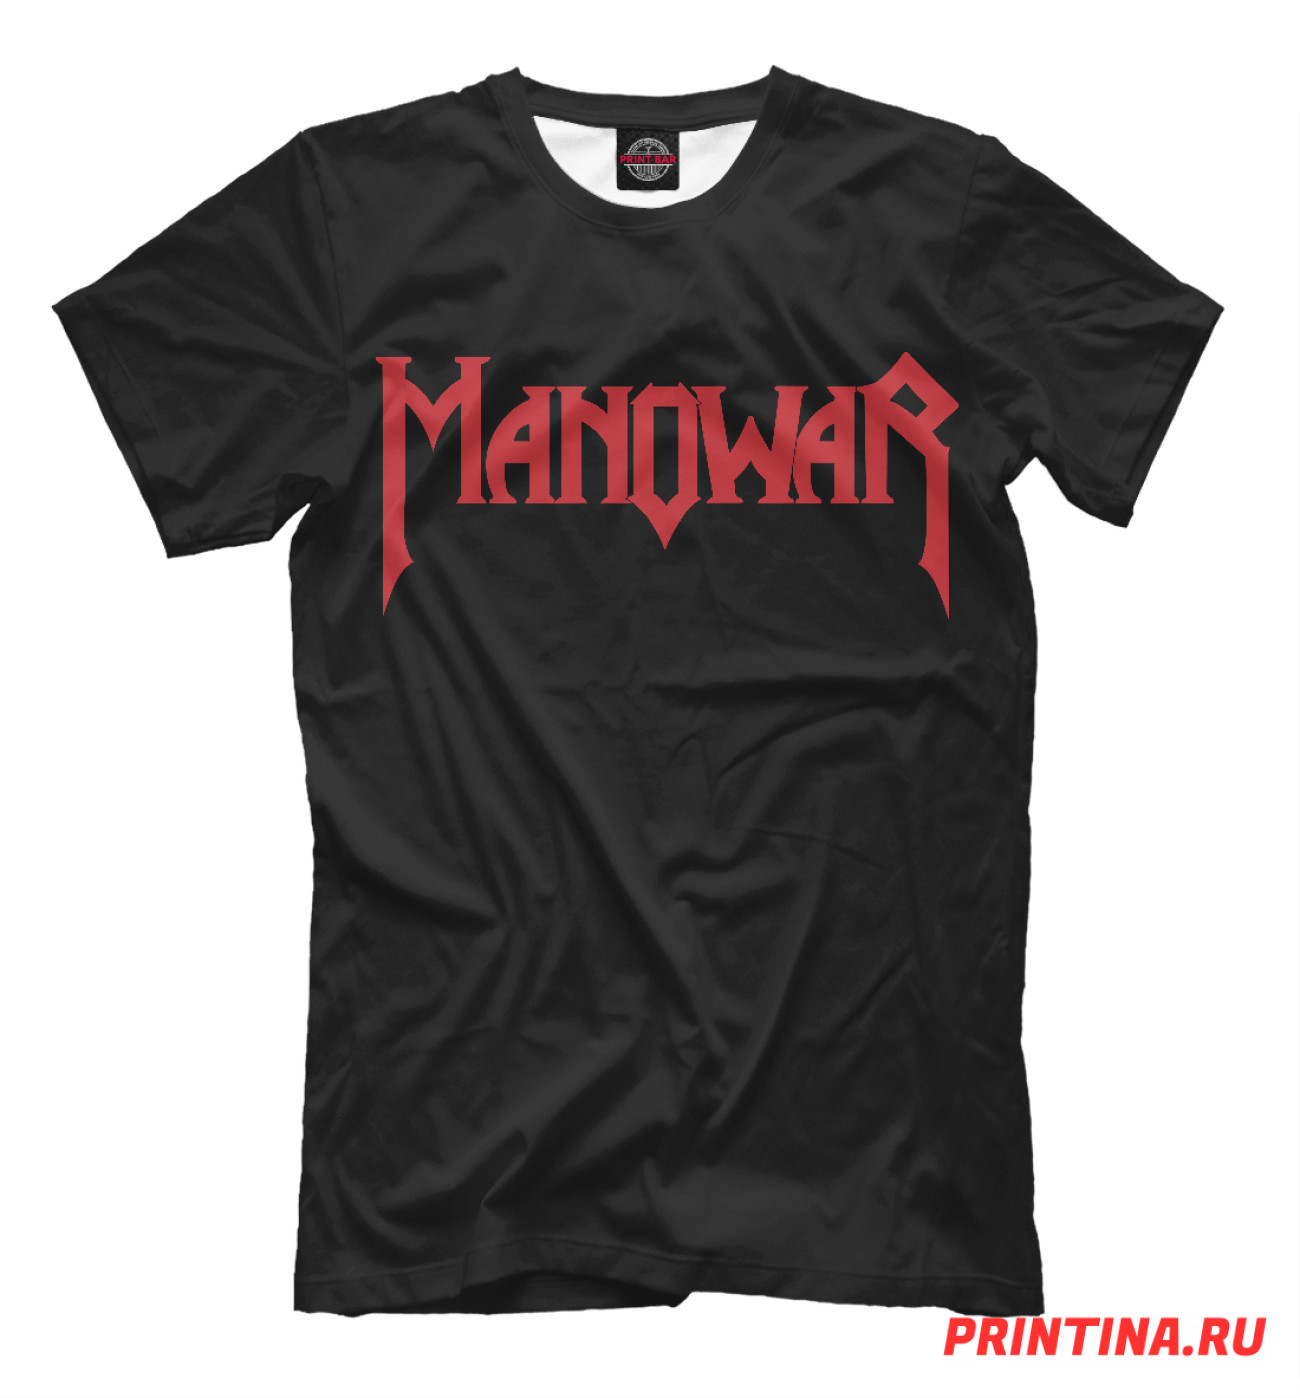 Мужская Футболка Manowar, артикул: MNW-510865-fut-2